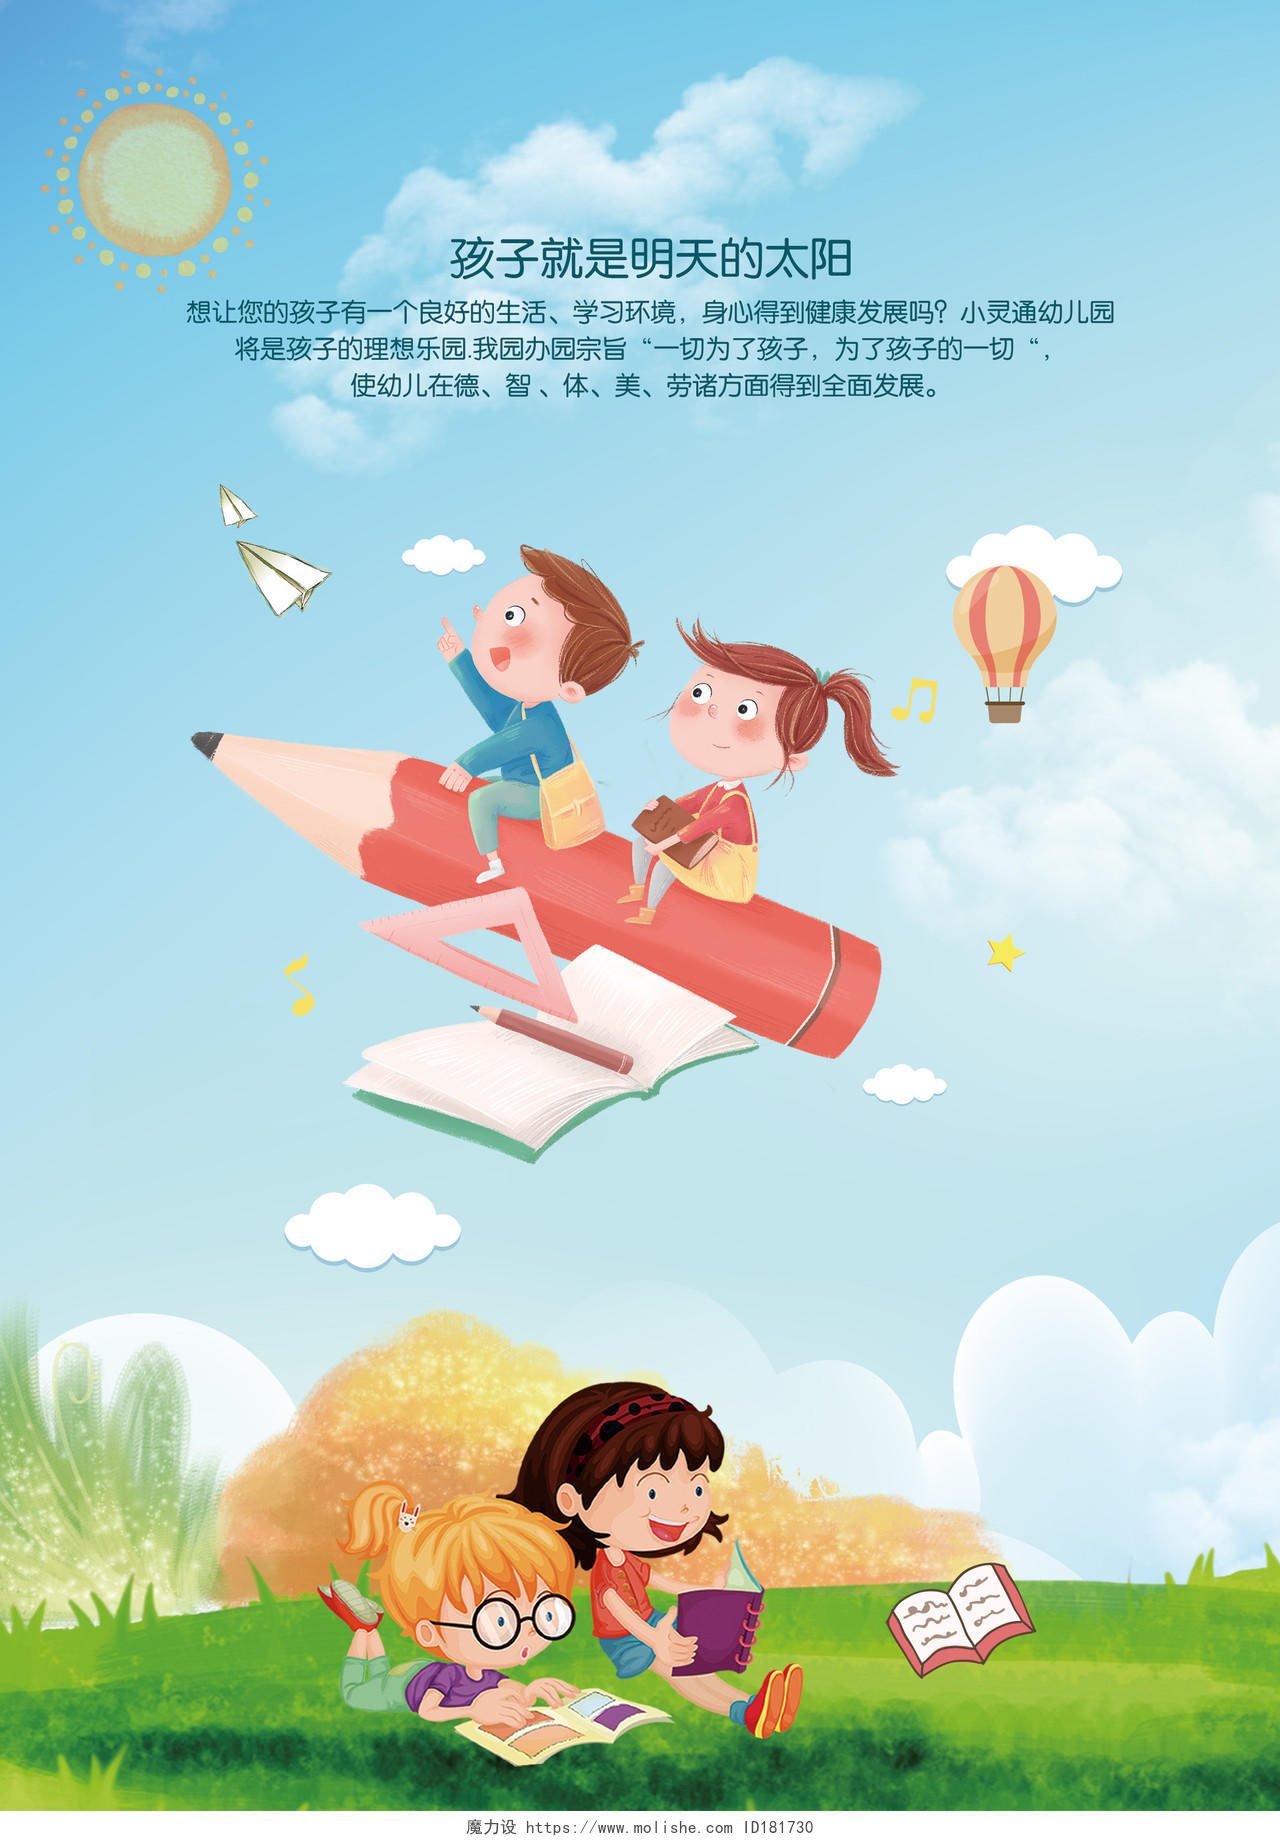 学校宣传单卡通幼儿园画册封面梦想放飞未来画册封面